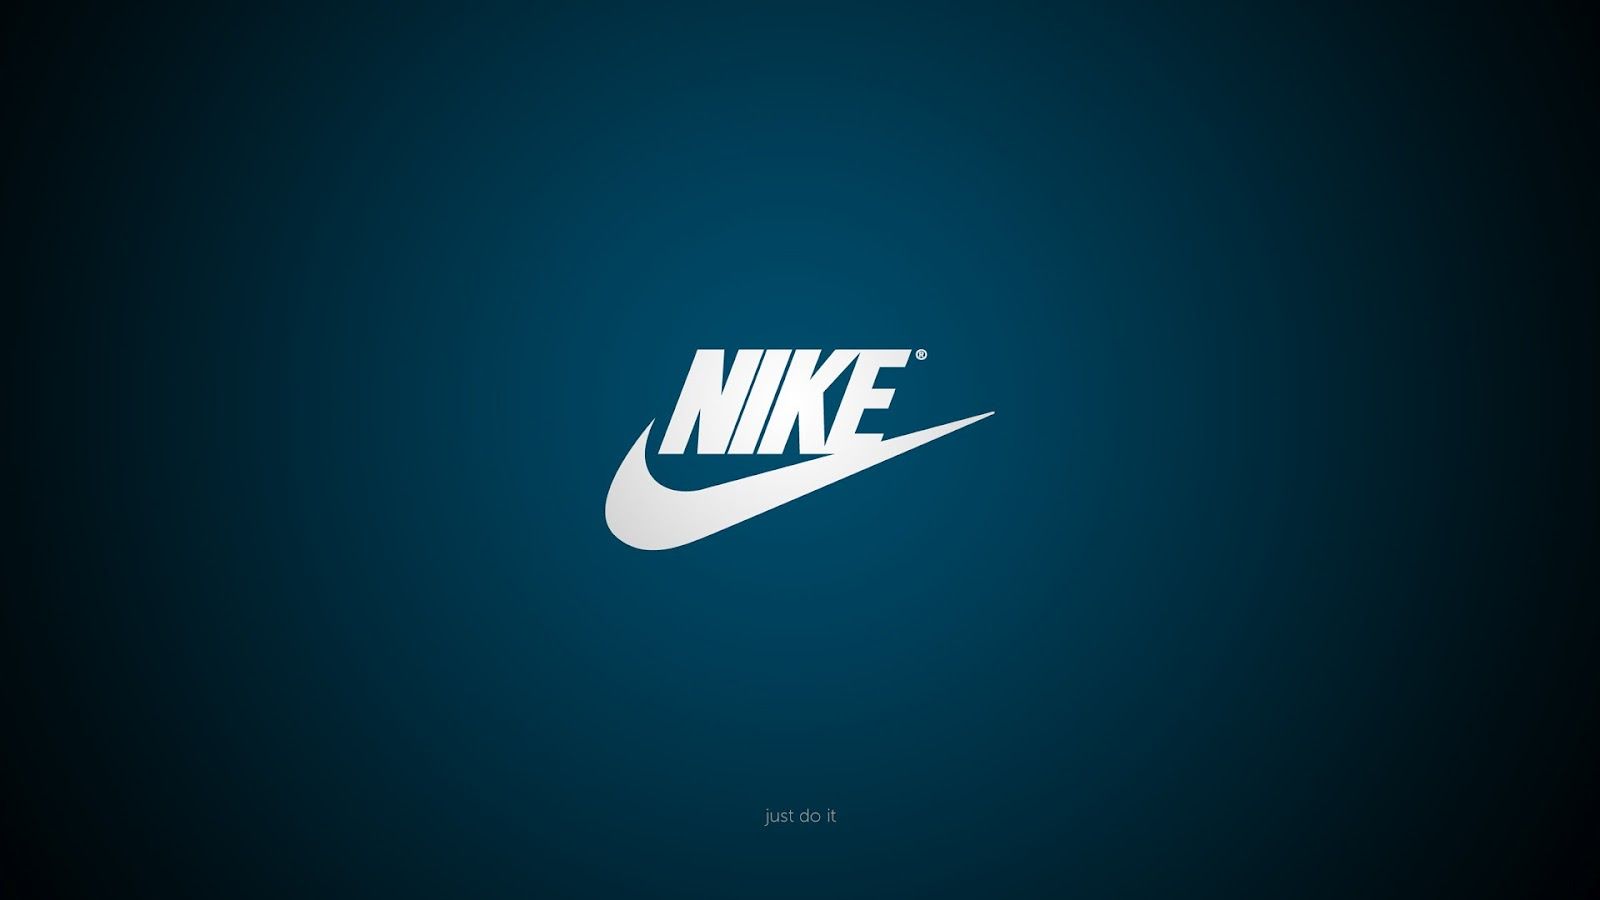 nike brand logo minimal HD wallpaper. Nike logo wallpaper, Nike wallpaper, Adidas wallpaper background